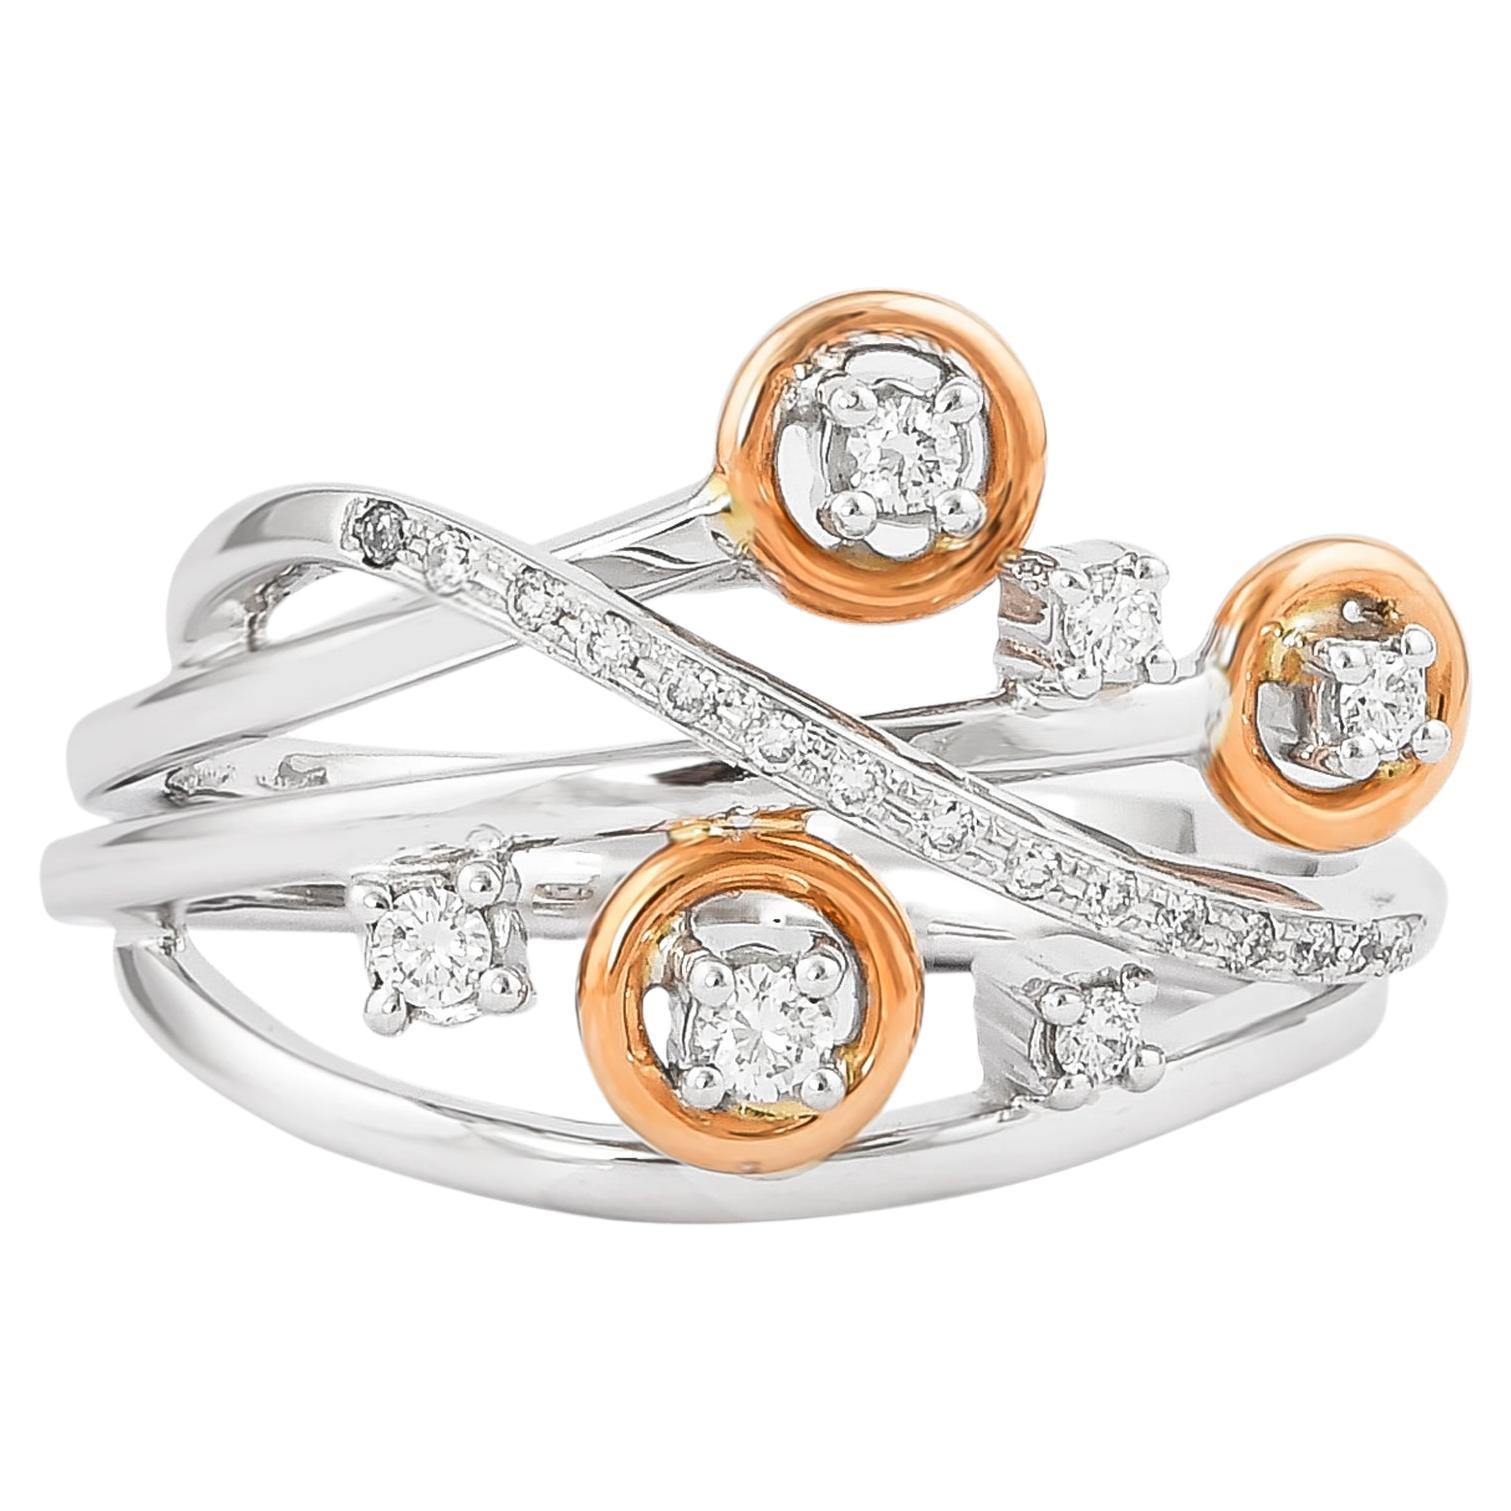 0.177 Carat Diamond Ring in 18 Karat White & Rose Gold For Sale